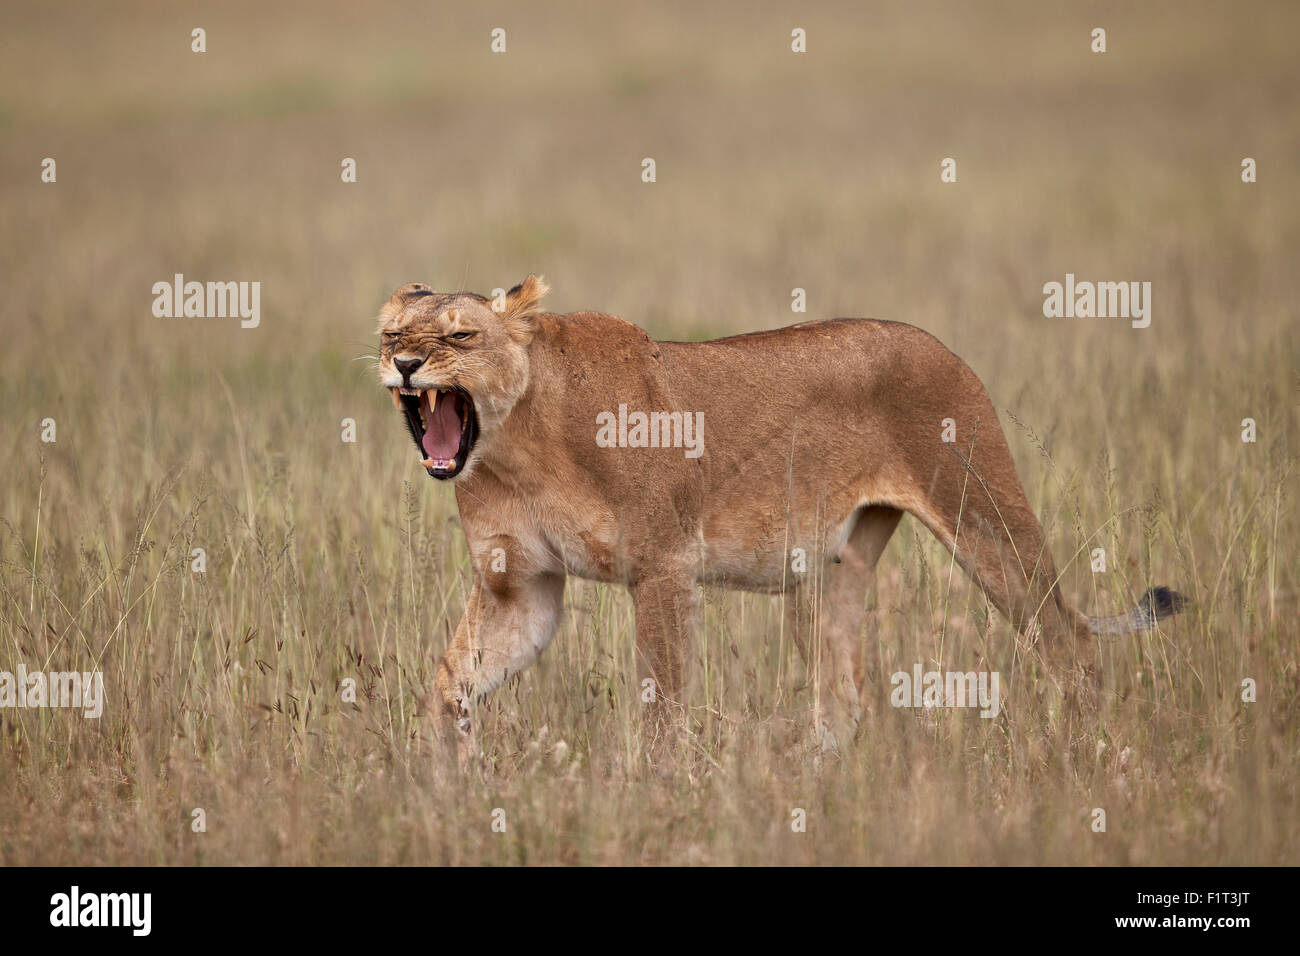 León (Panthera leo) bostezo en hierba alta, Parque Nacional del Serengeti, Tanzania, África oriental, África Foto de stock